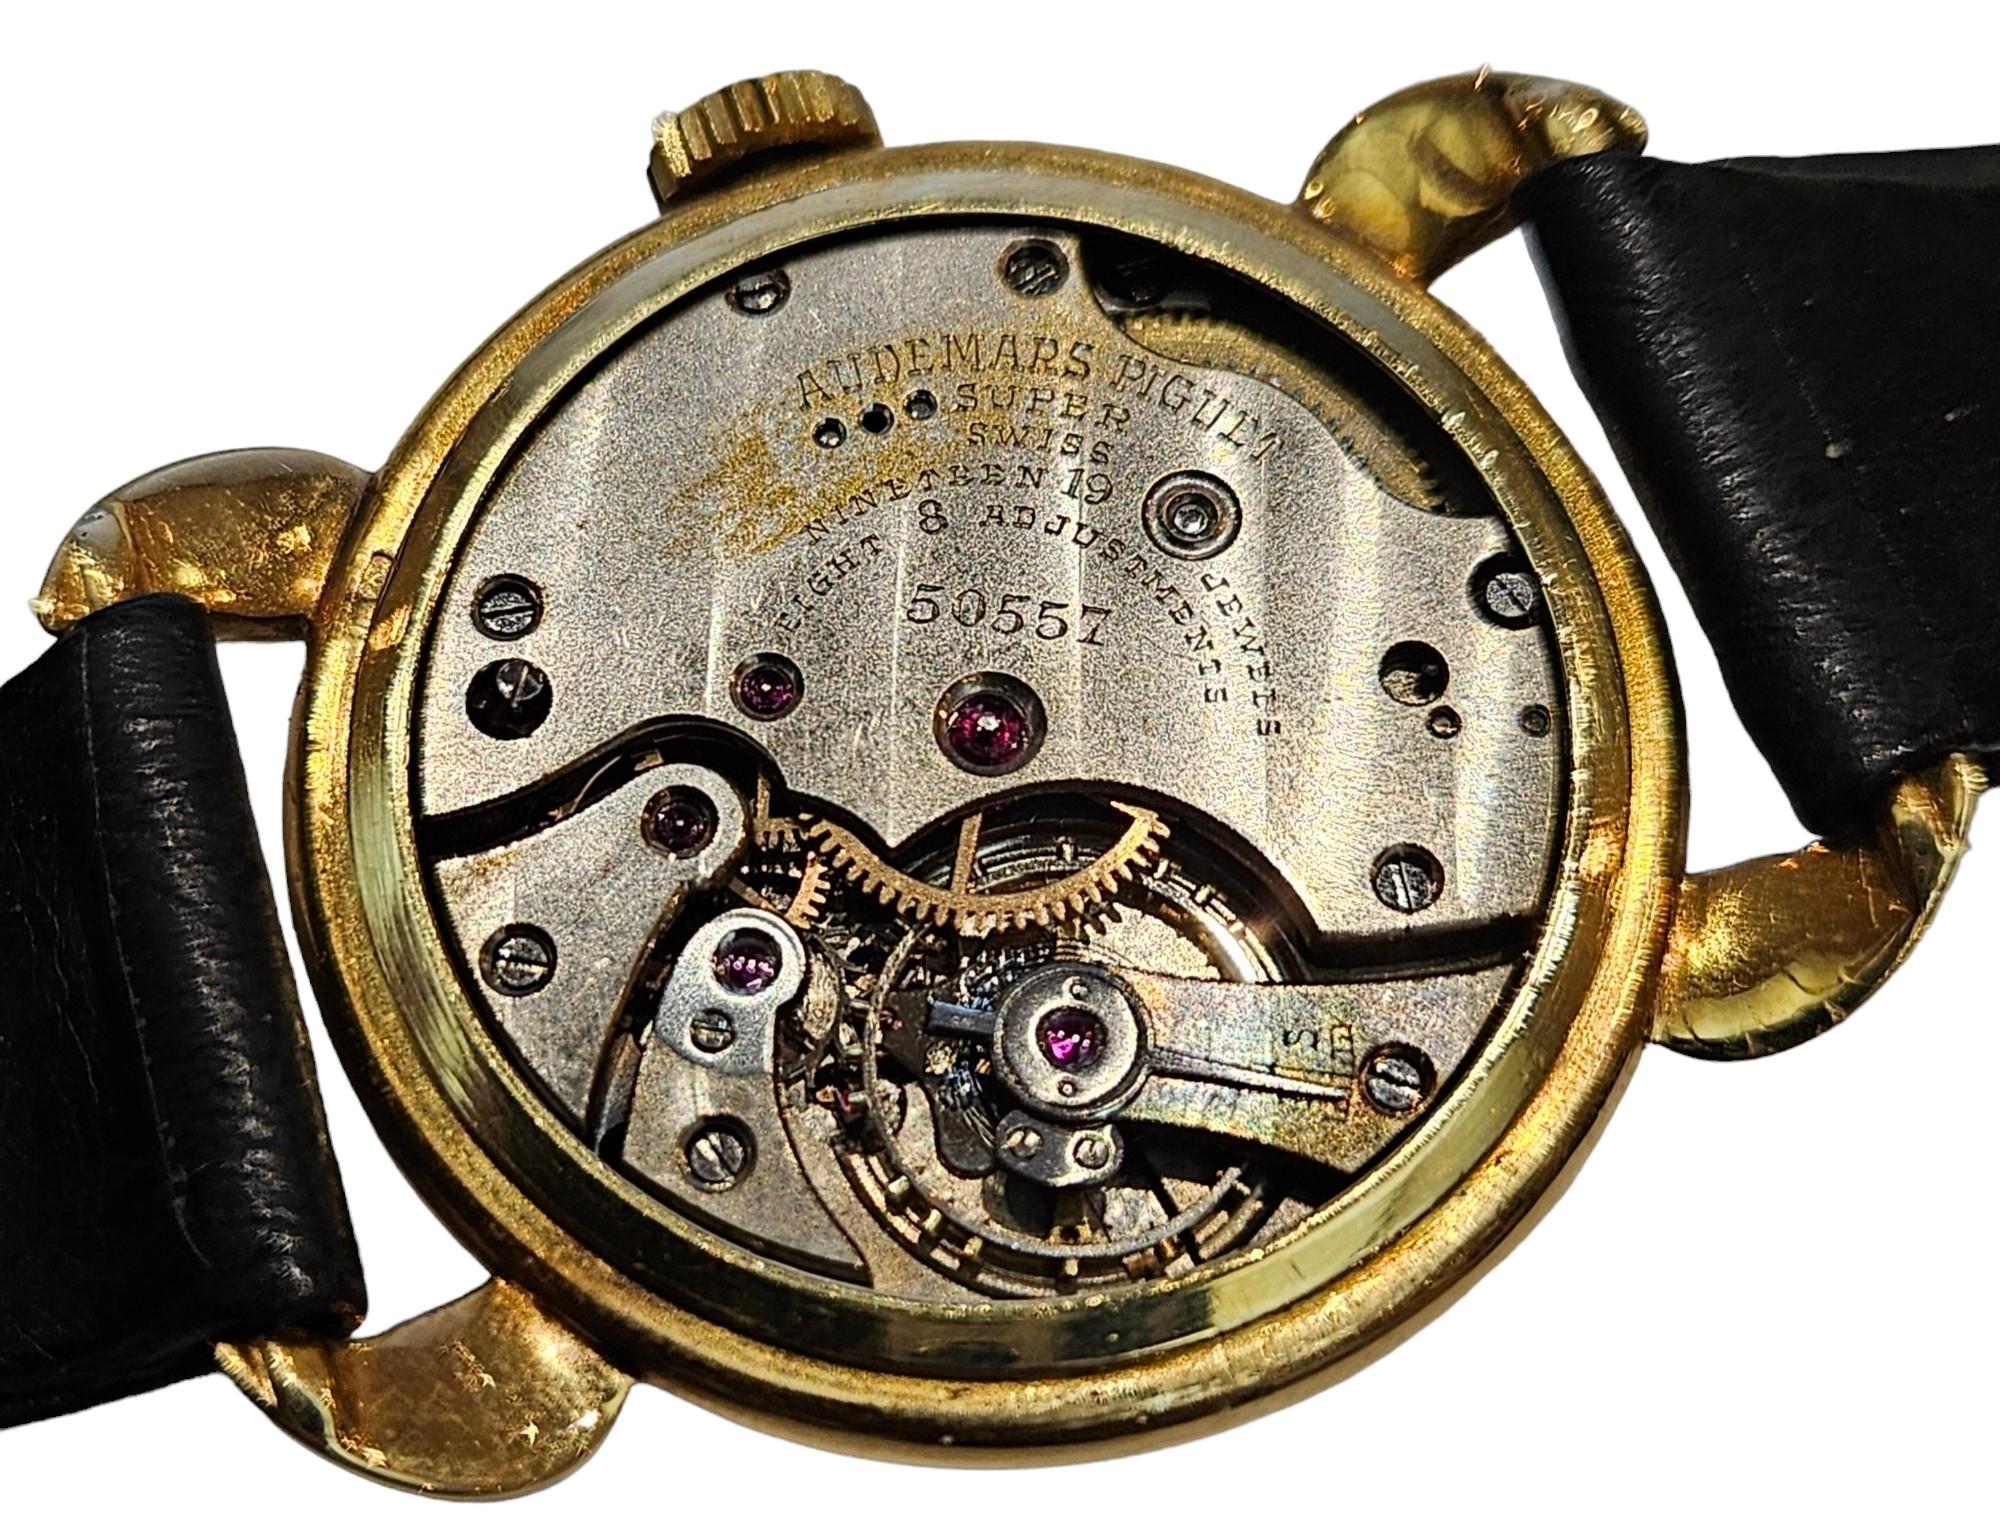 18 Kt Gold Audemars Piguet Calatrava Vintage Rare Collectors Wrist Watch 1940's For Sale 9